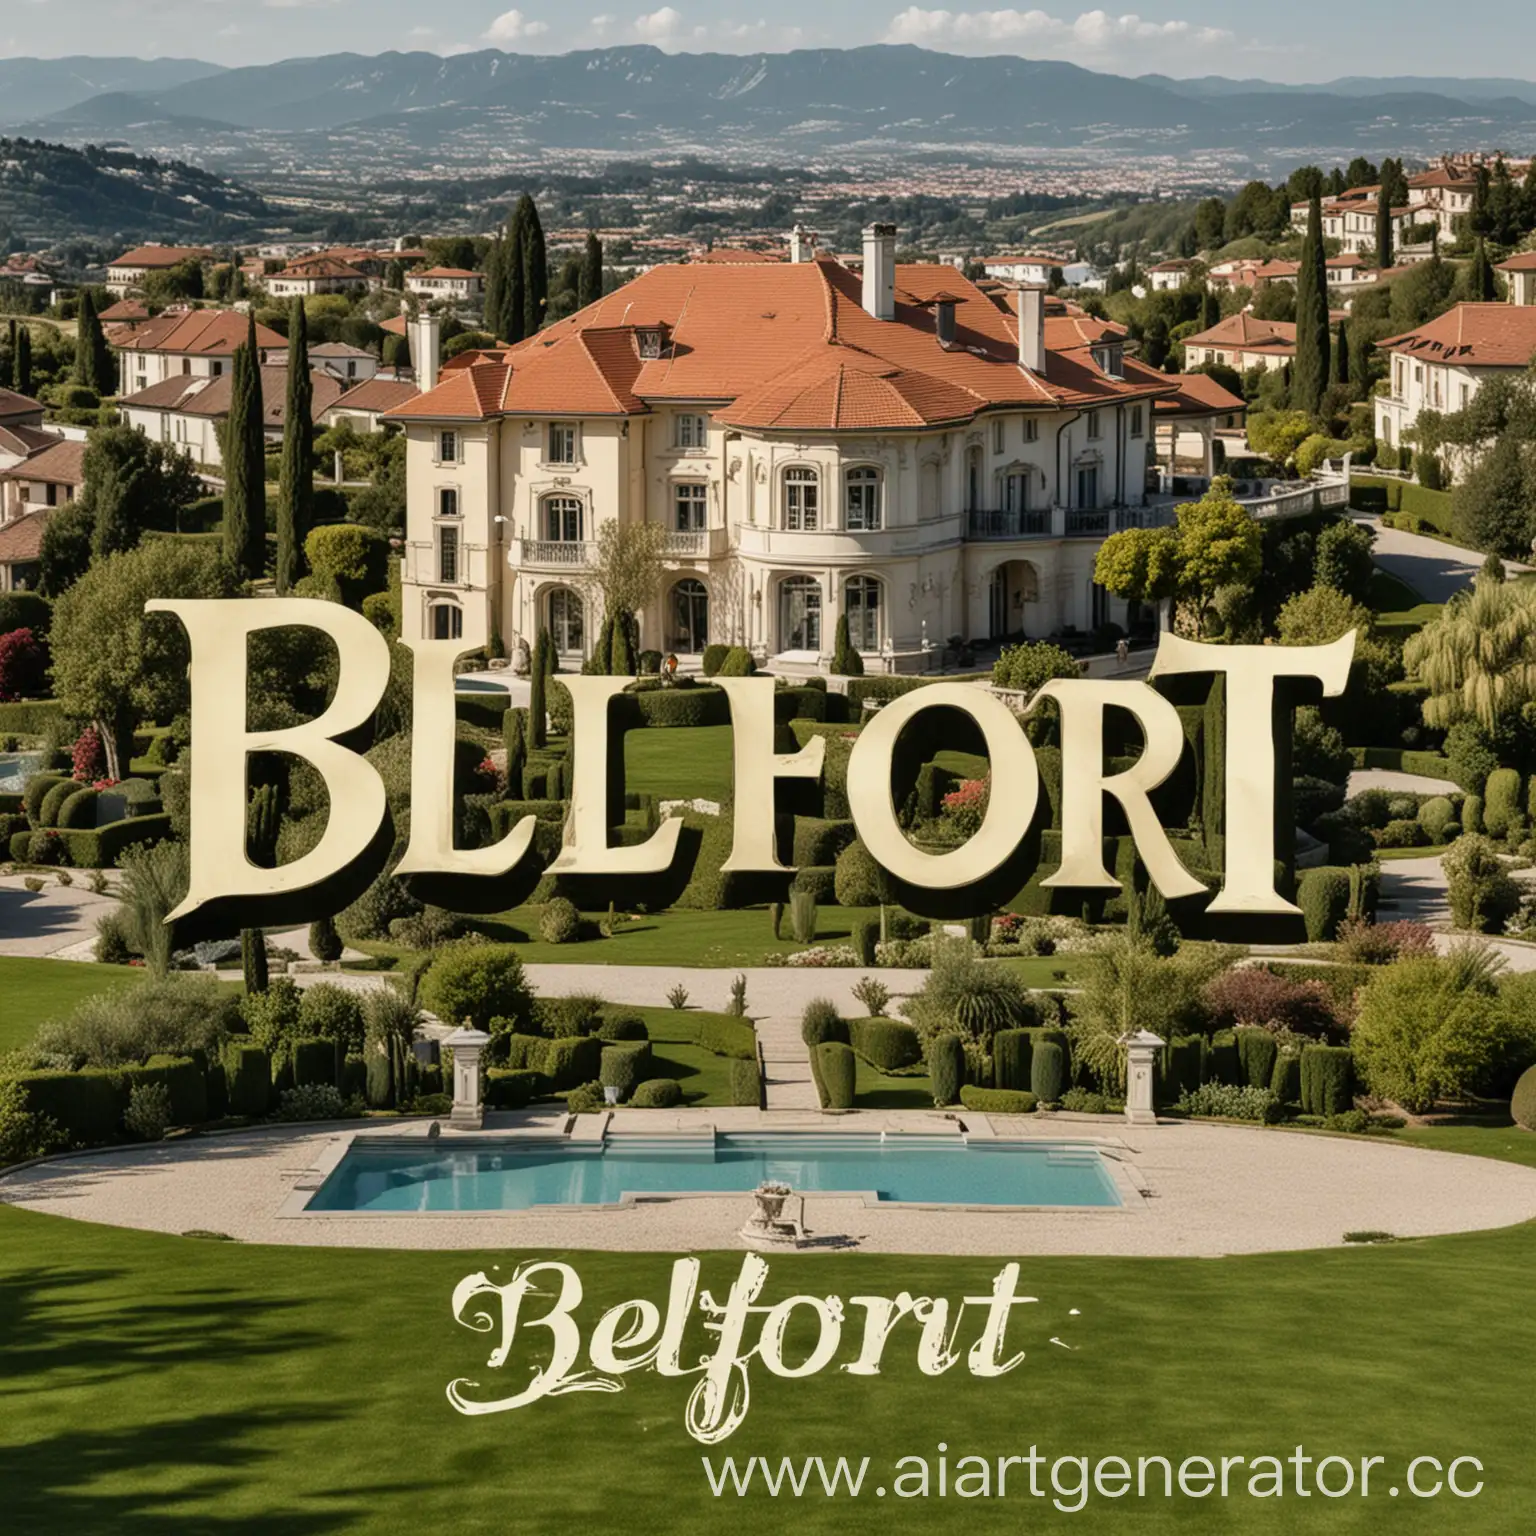 Luxury-Villa-with-Belfort-Text-Logo